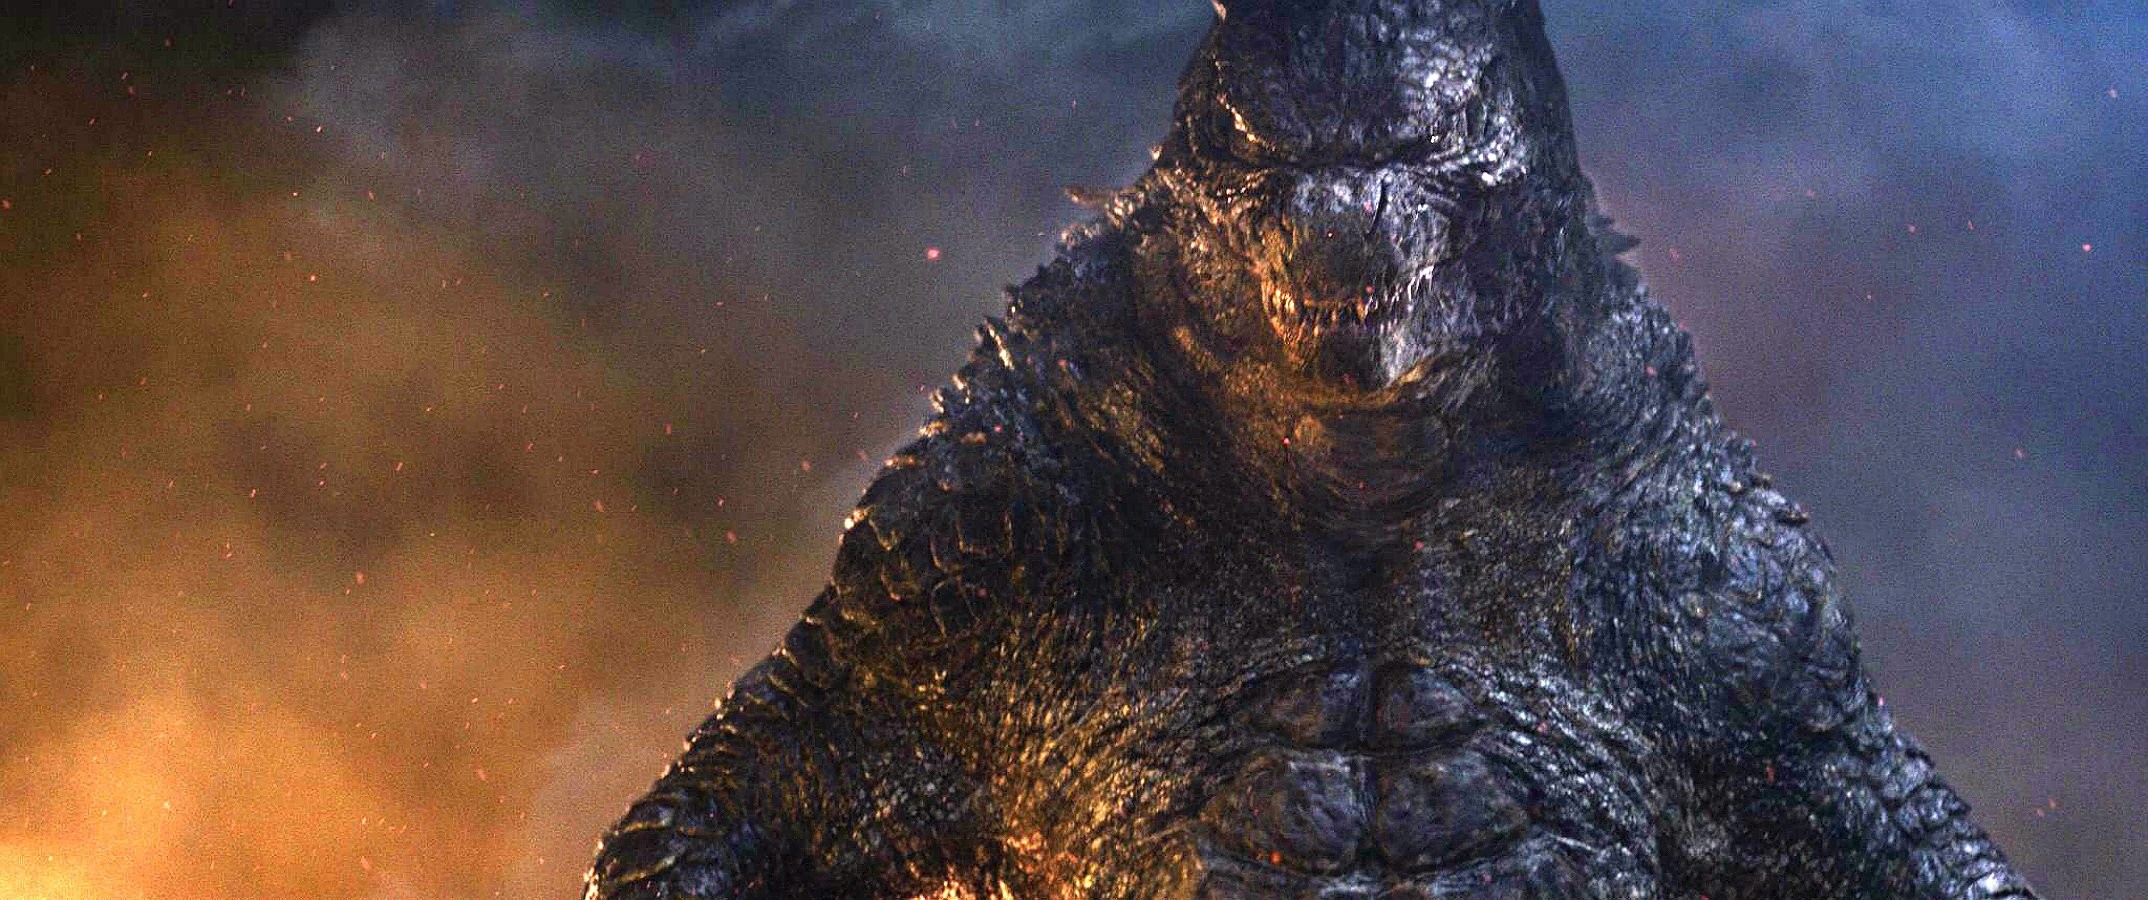 Godzilla Hd - HD Wallpaper 